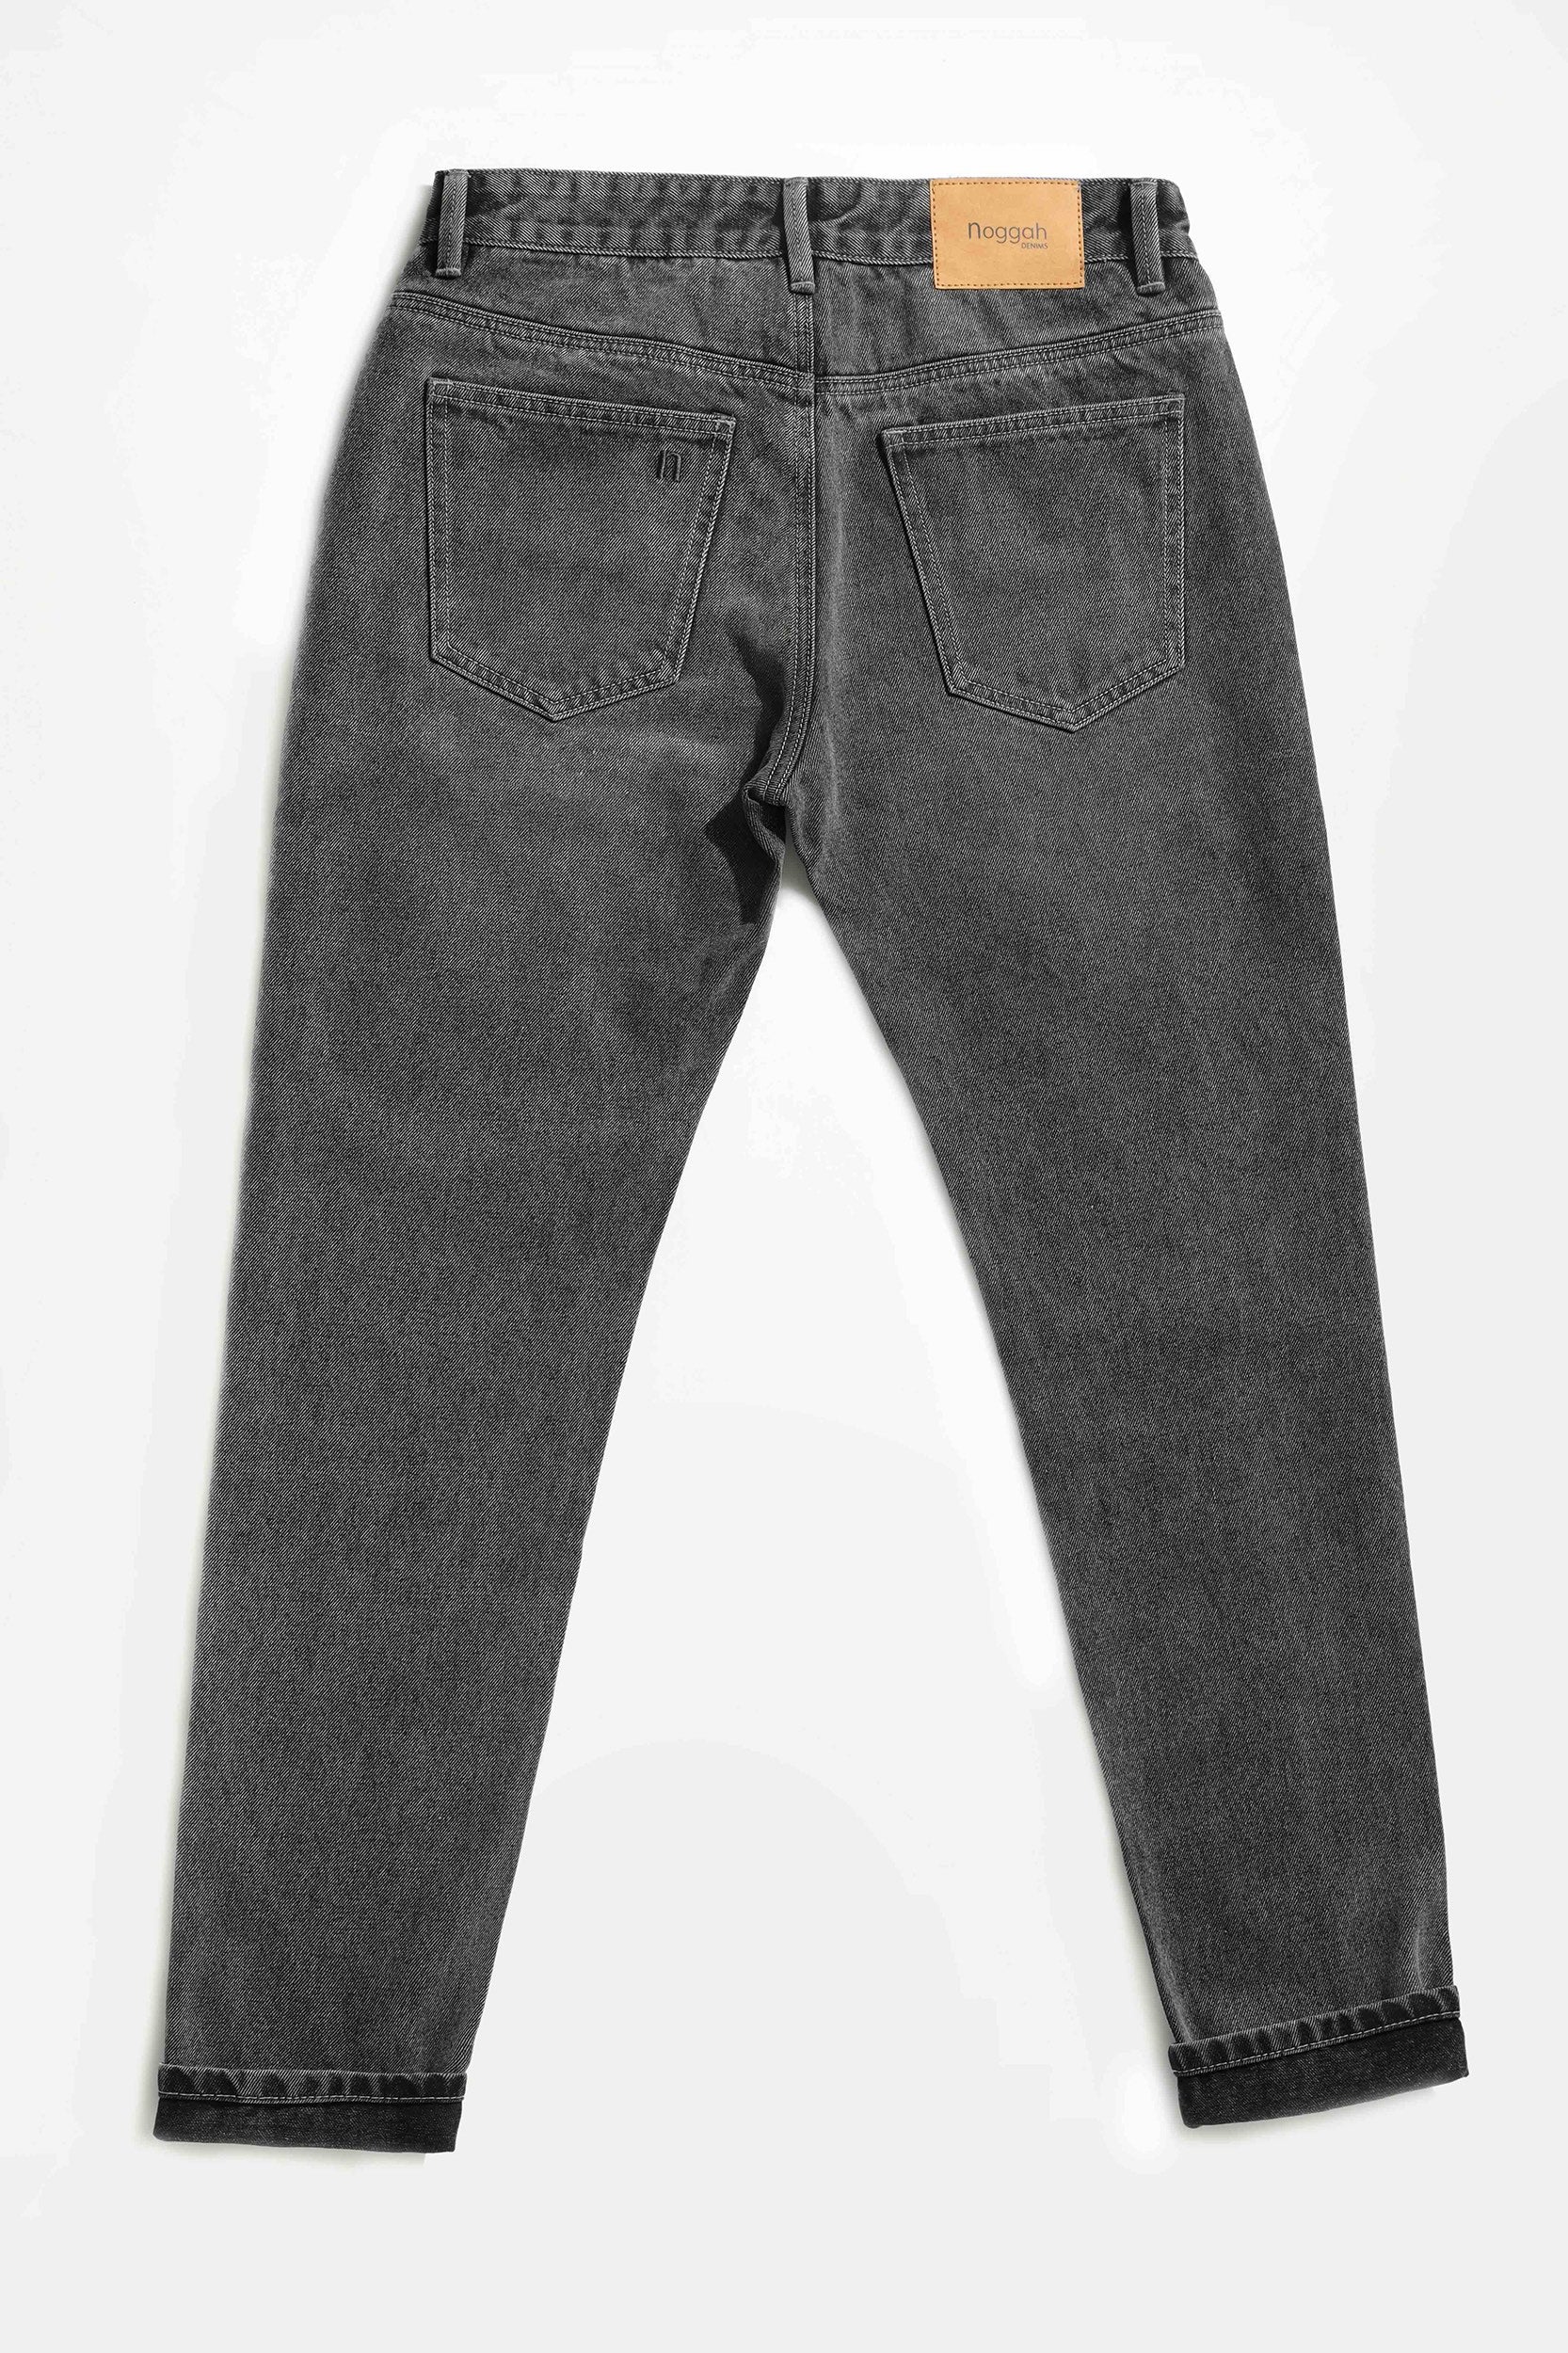 RUFSKIN® DENIM SALE | Shop Discounted Stretch and Non-Stretch Denim Jeans